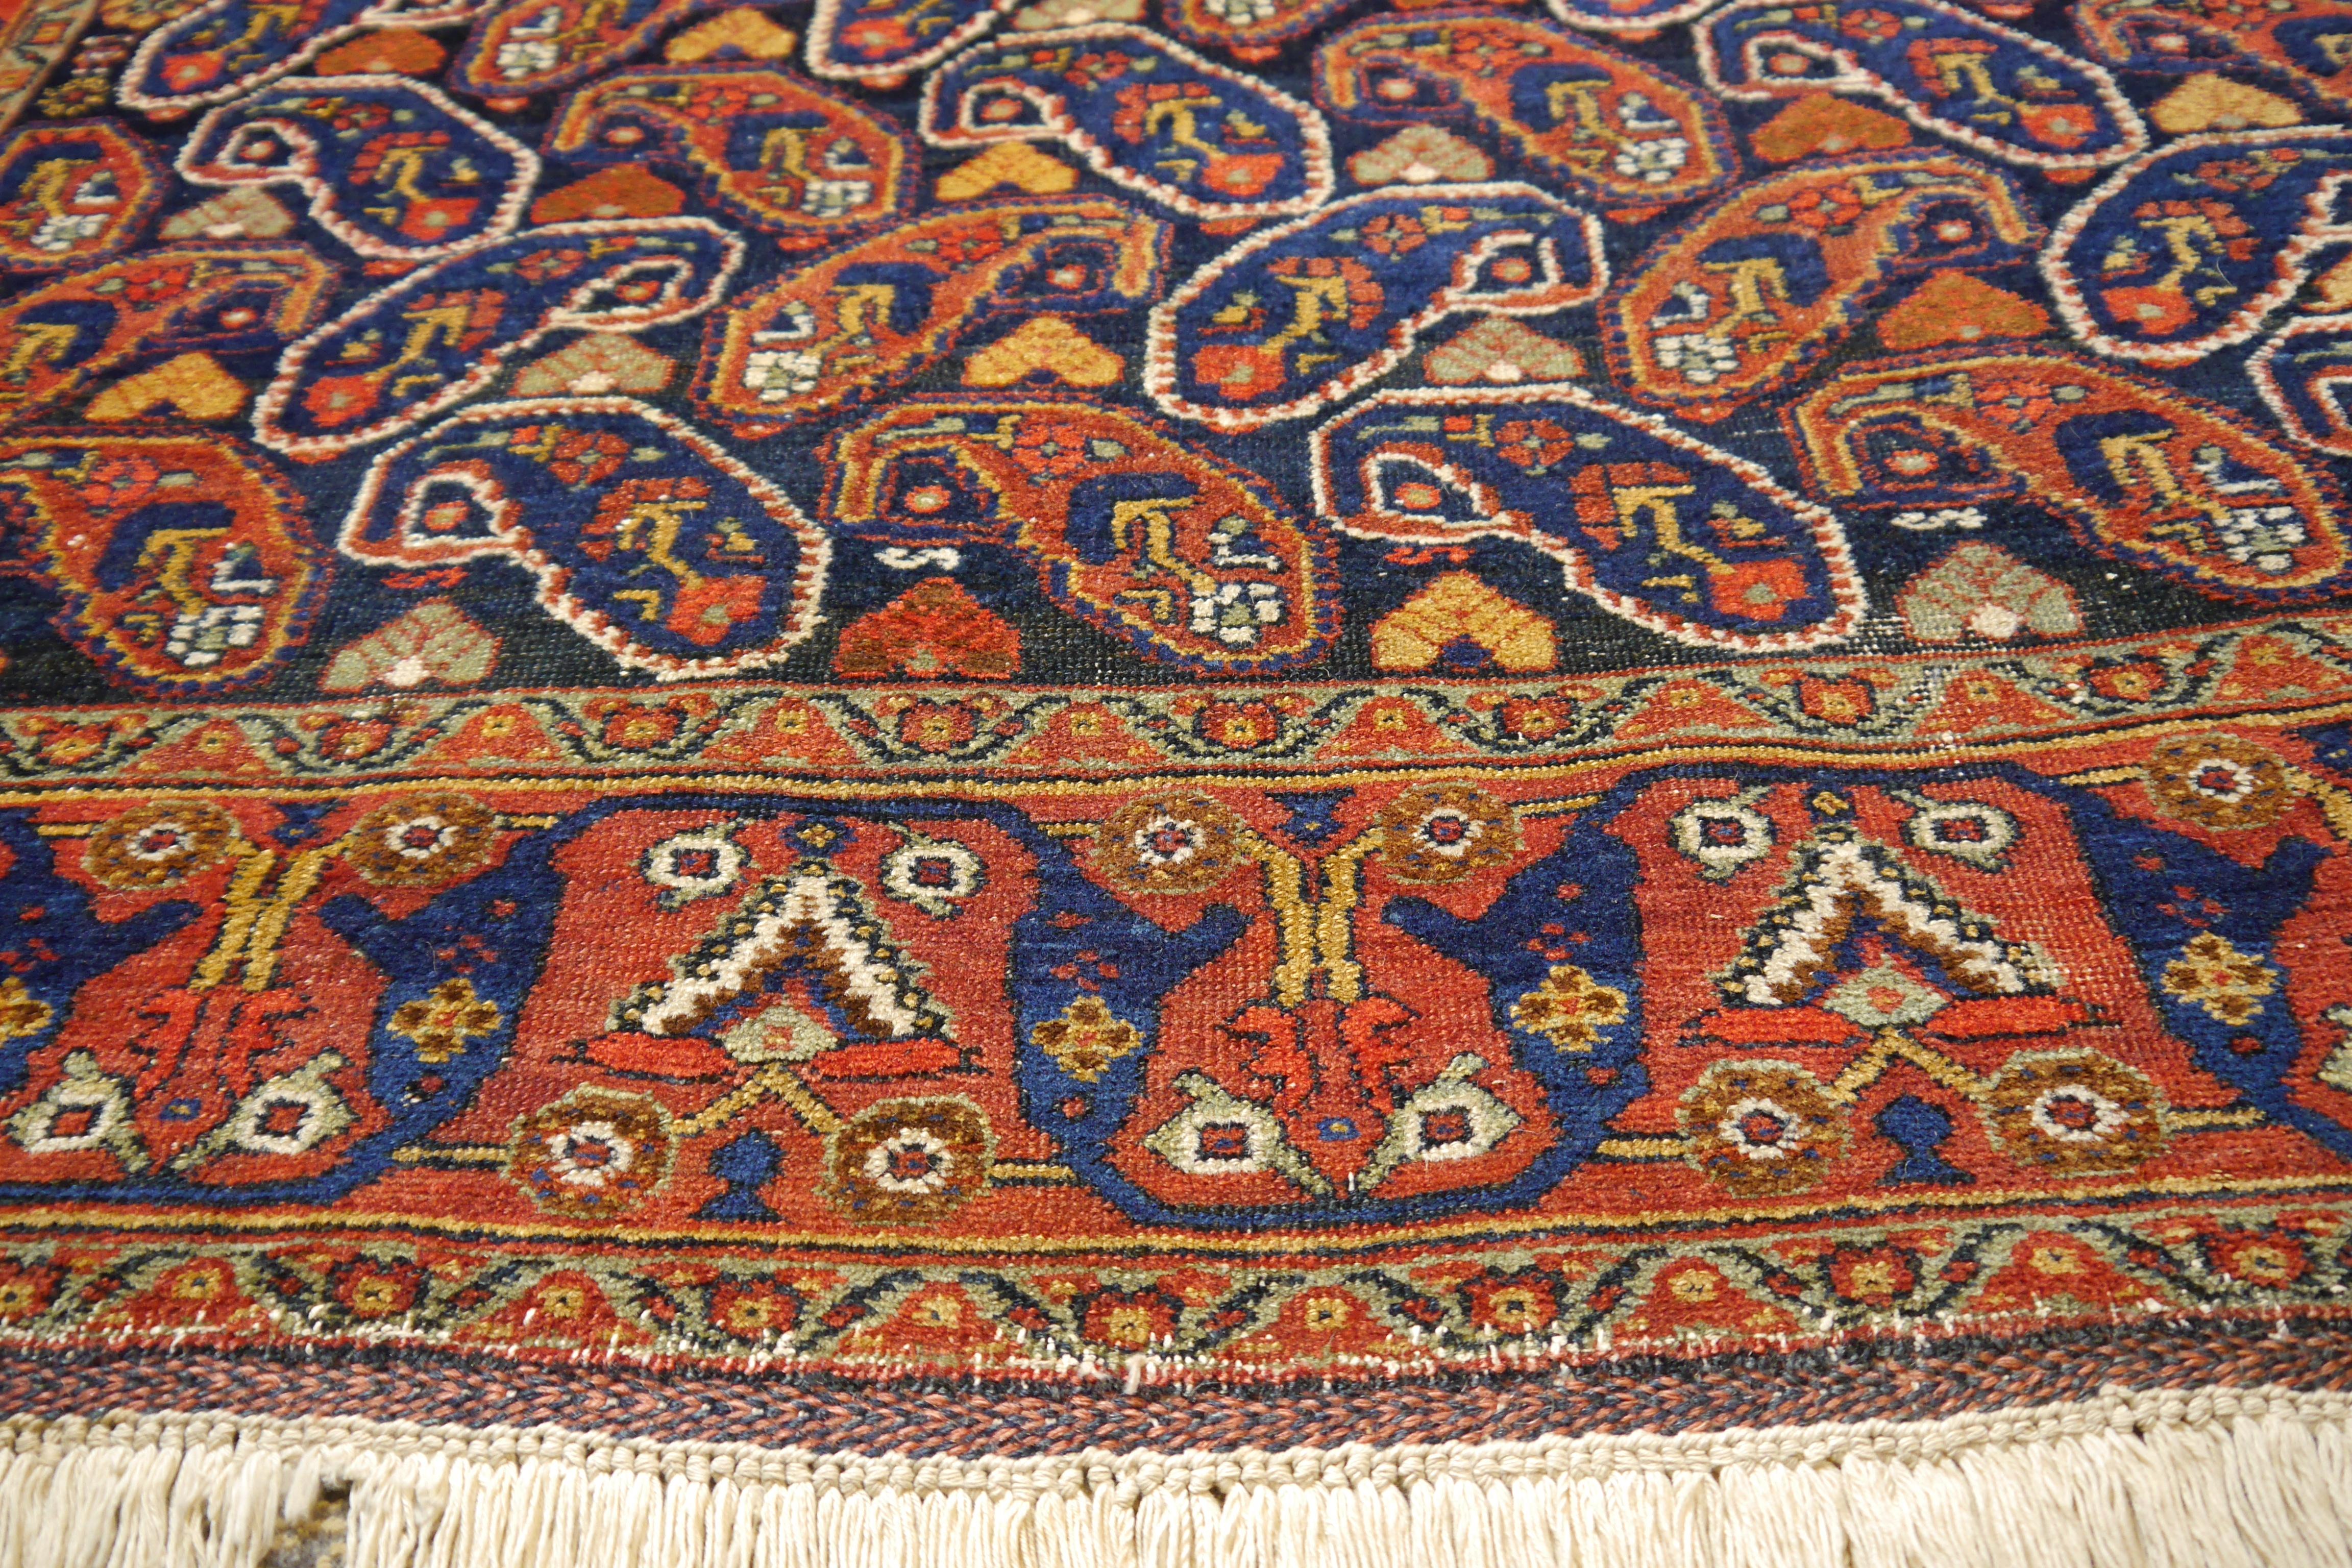 Wool Afshari antique rug  6.8 x 4.8 ft natural color Bothe design blue rust For Sale